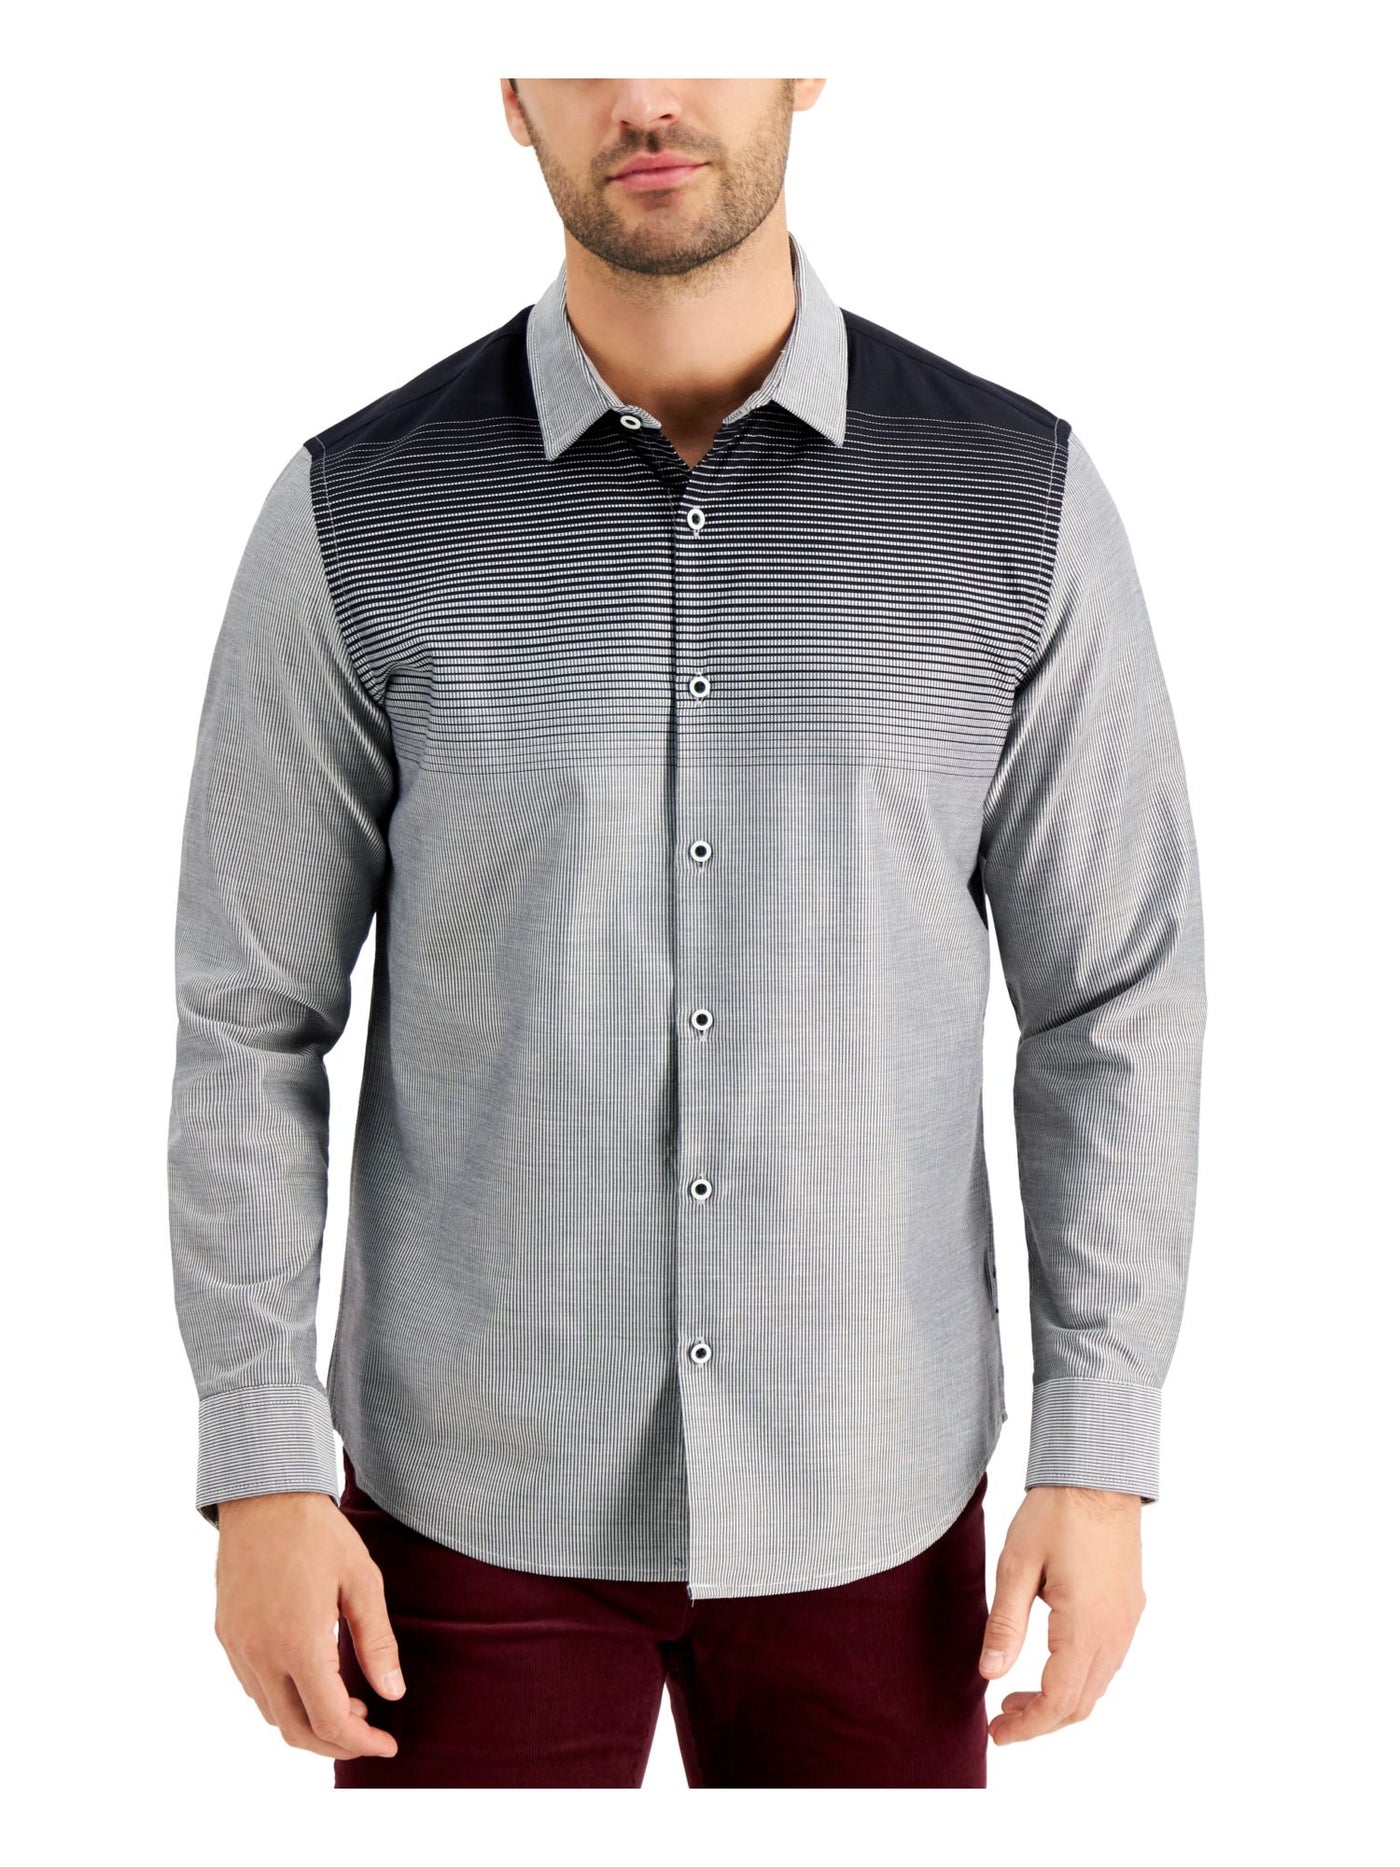 ALFANI Mens Black Printed Point Collar Classic Fit Button Down Cotton Blend Cotton Blend Shirt L